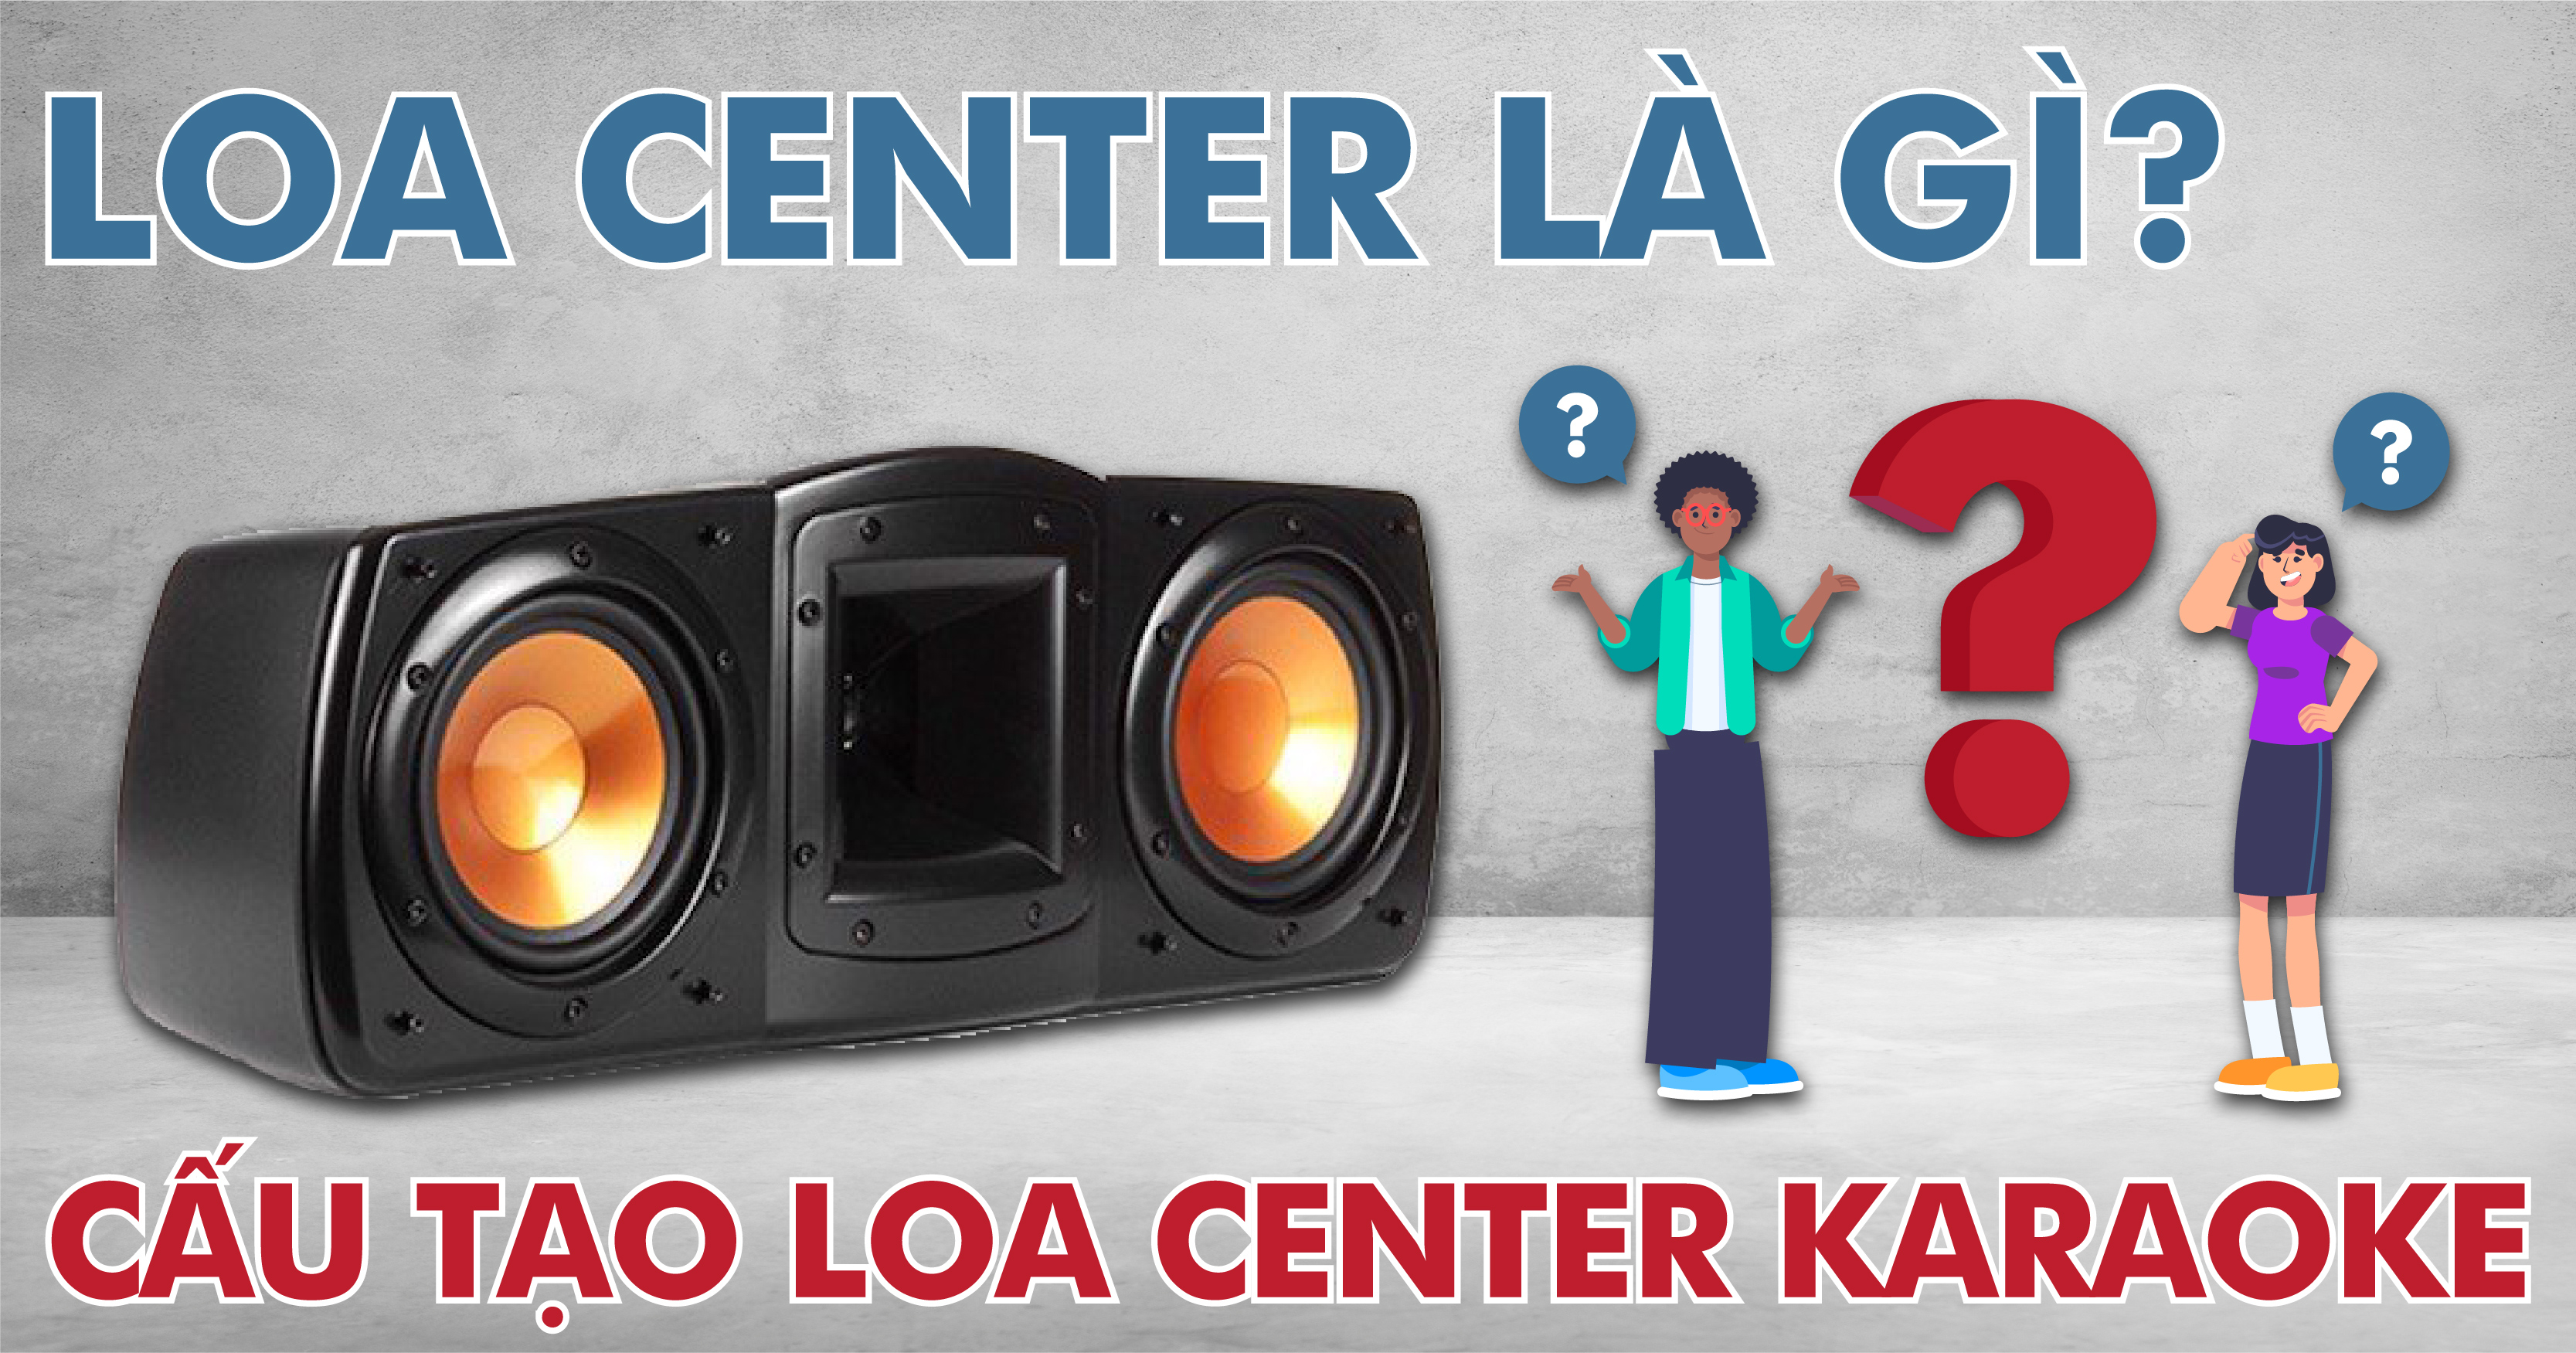 Loa Center là gì? Cấu Tạo Loa Center Karaoke